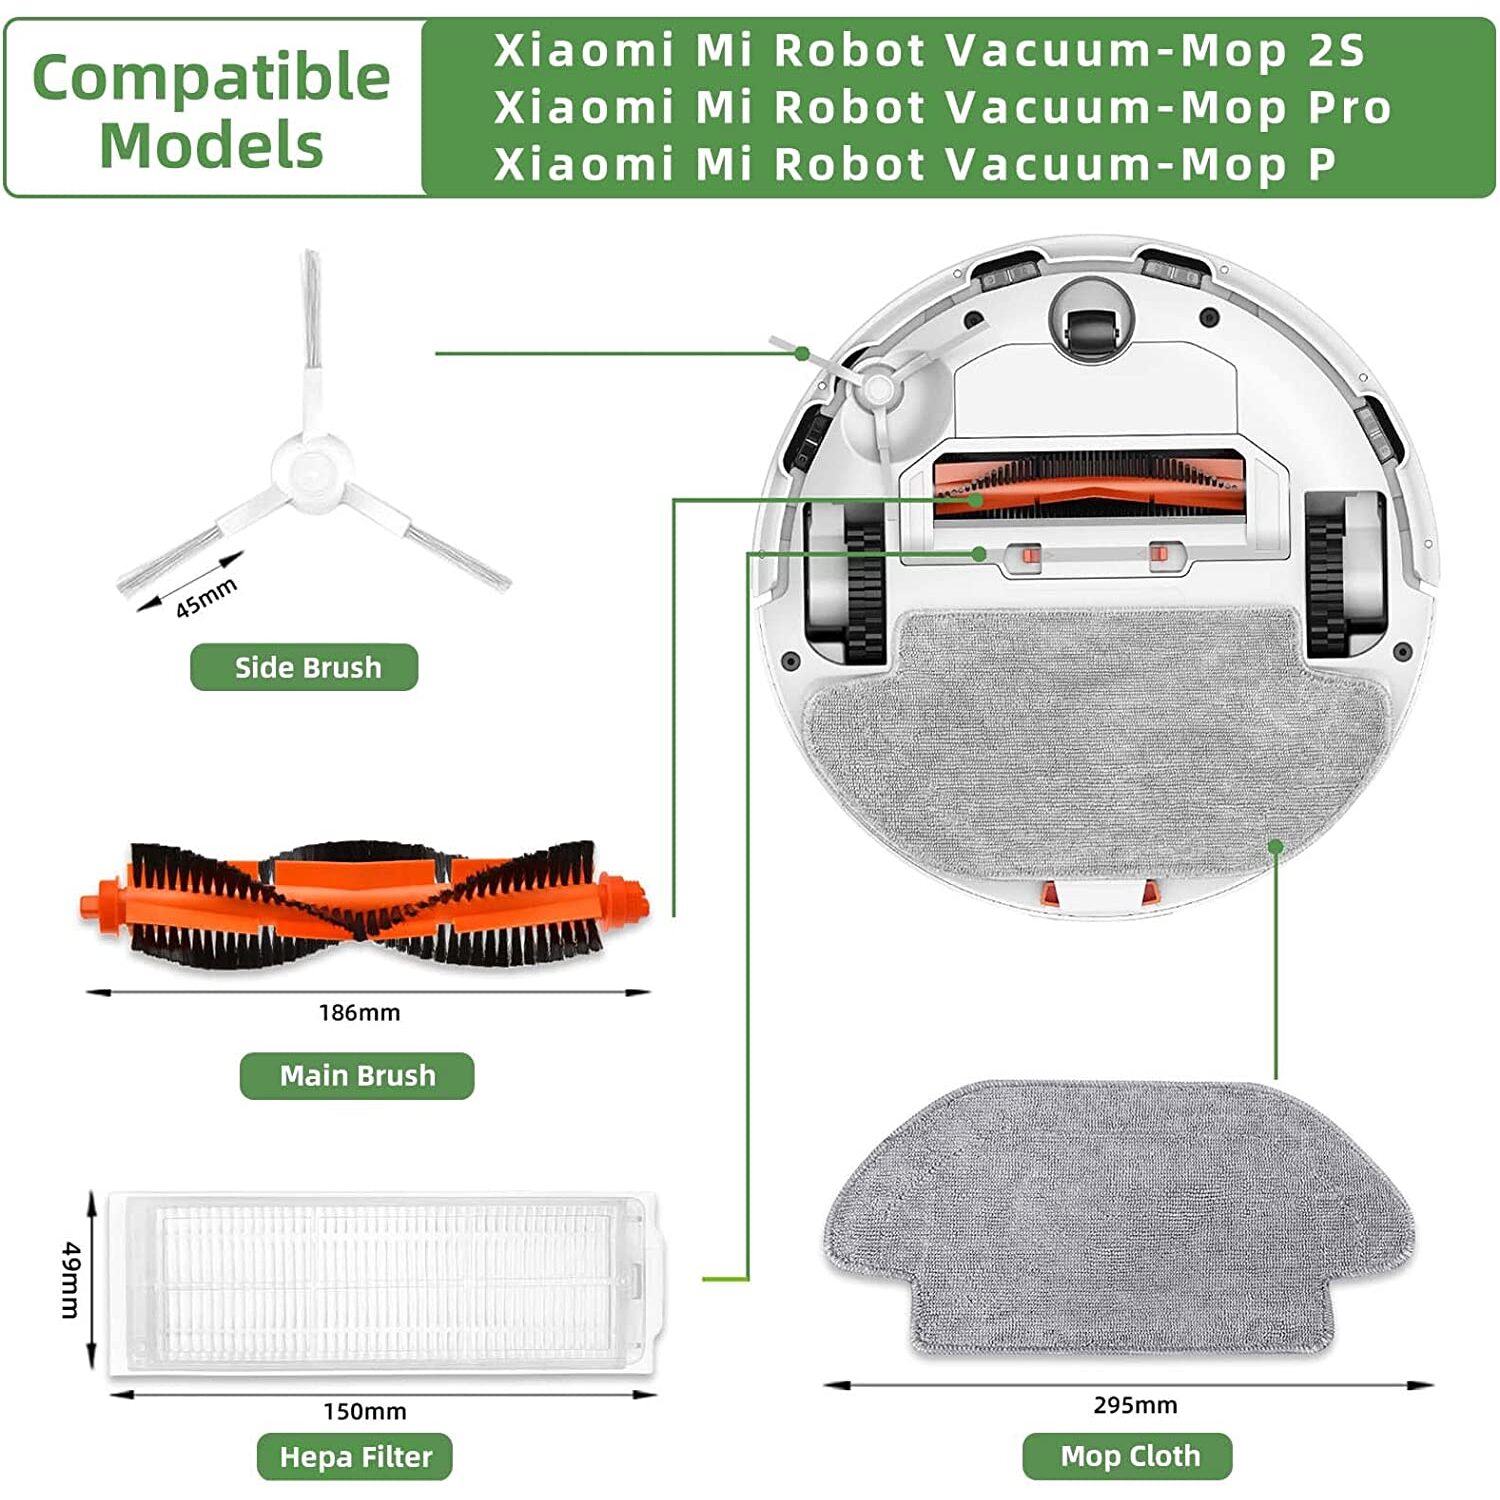 Replacement accessories for Xiaomi Mi Robot Vacuum Mop 2S / Mop P